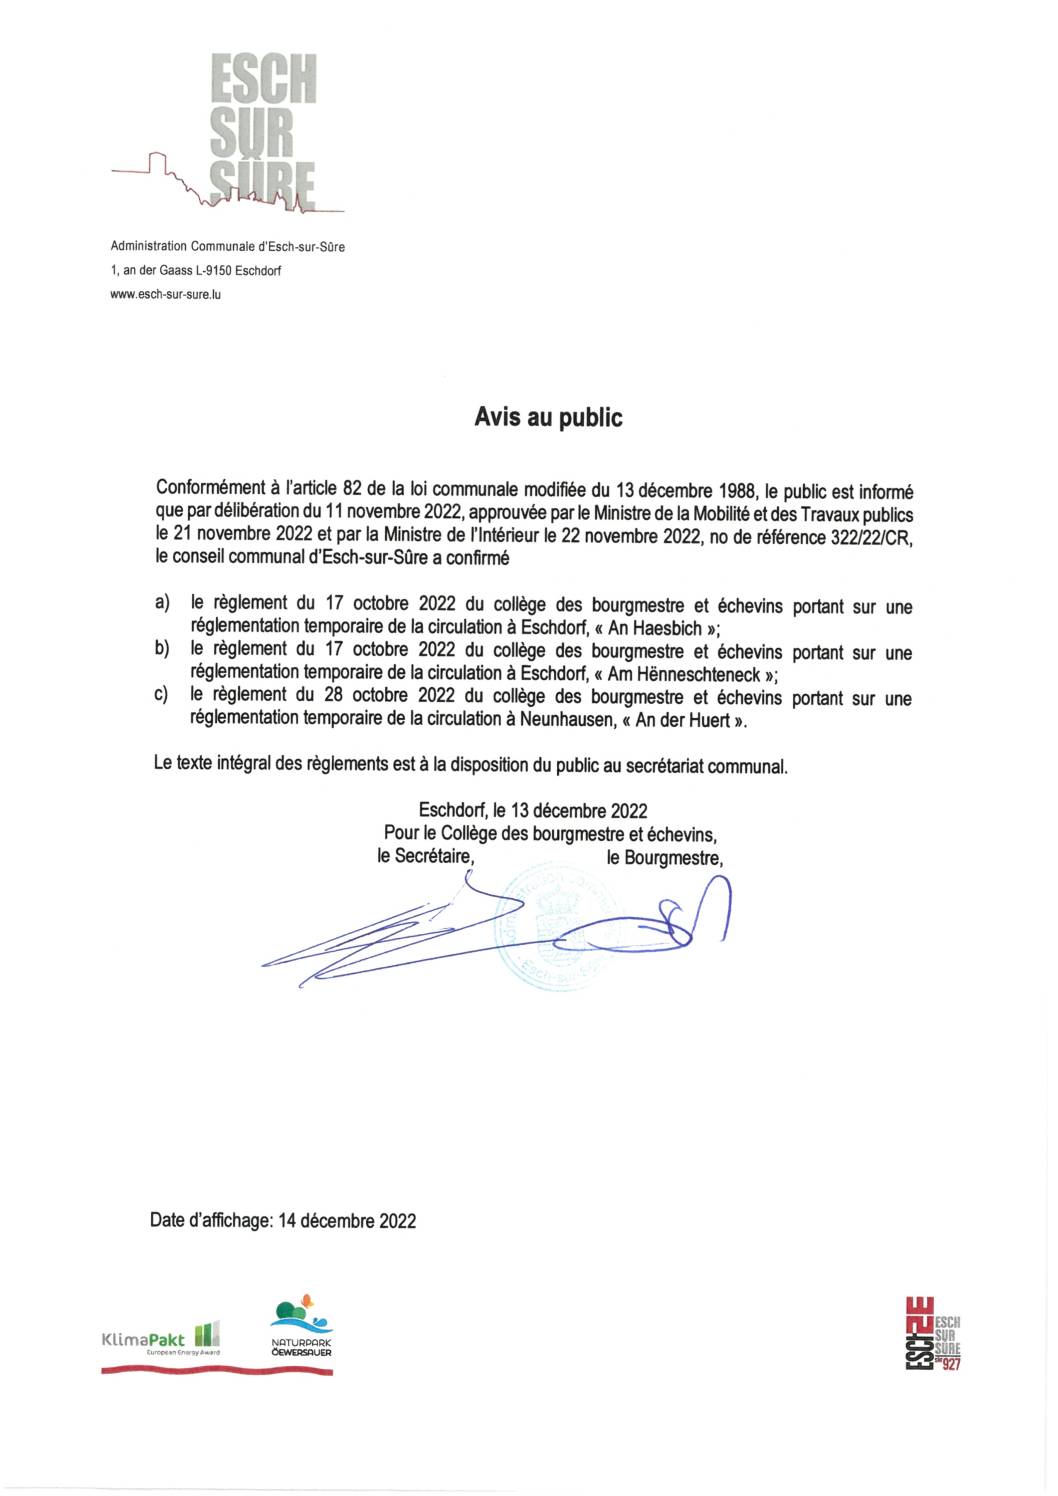 2022.12.14_Avis - Confirmation des règlements du collège des bourgmestre et échevins du 17.10.2022 et du 28.10.2022